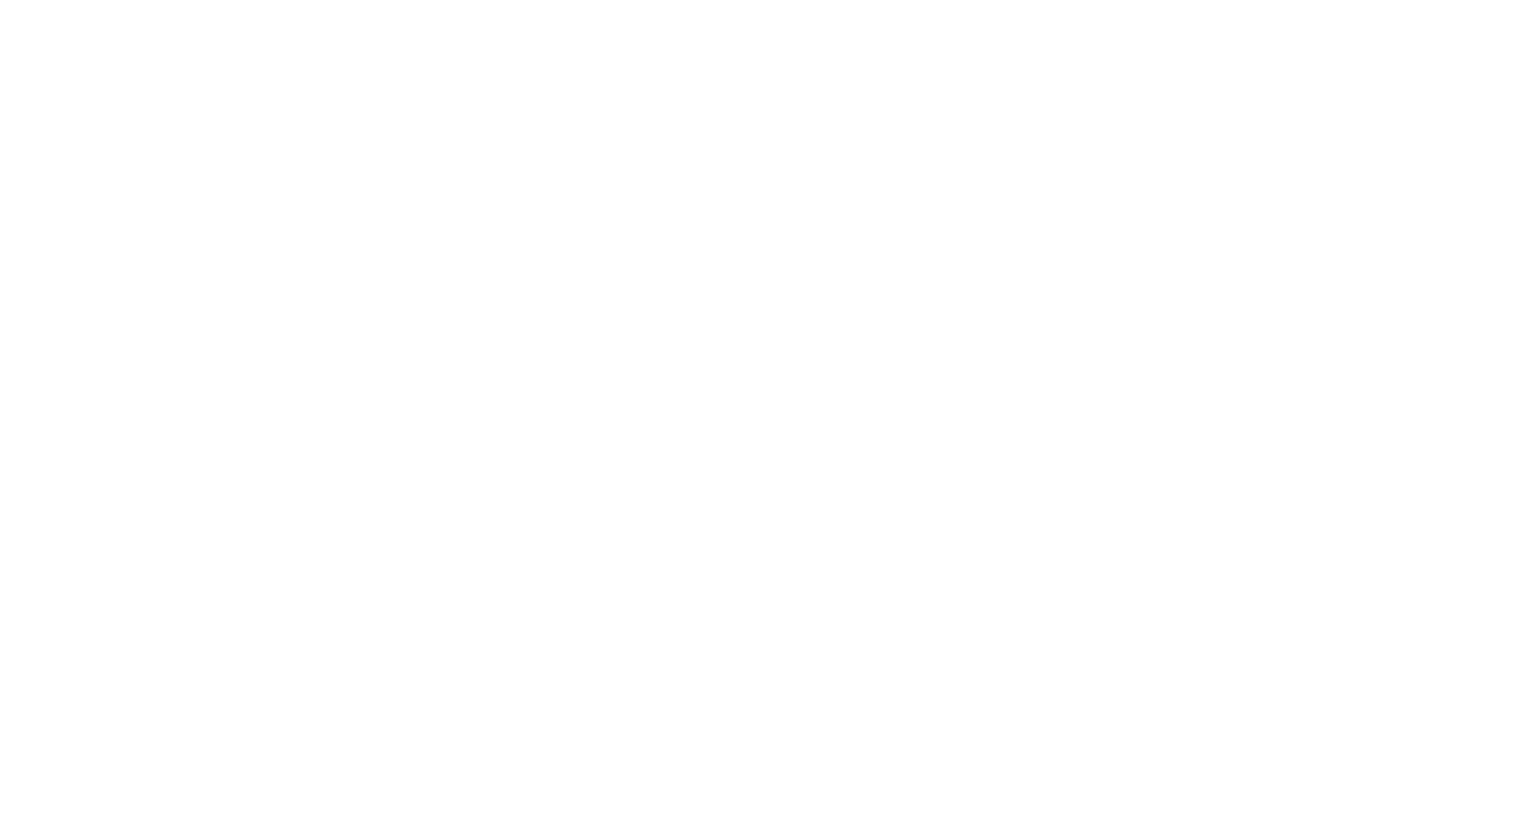 Sumo Logic logo for dark backgrounds (transparent PNG)